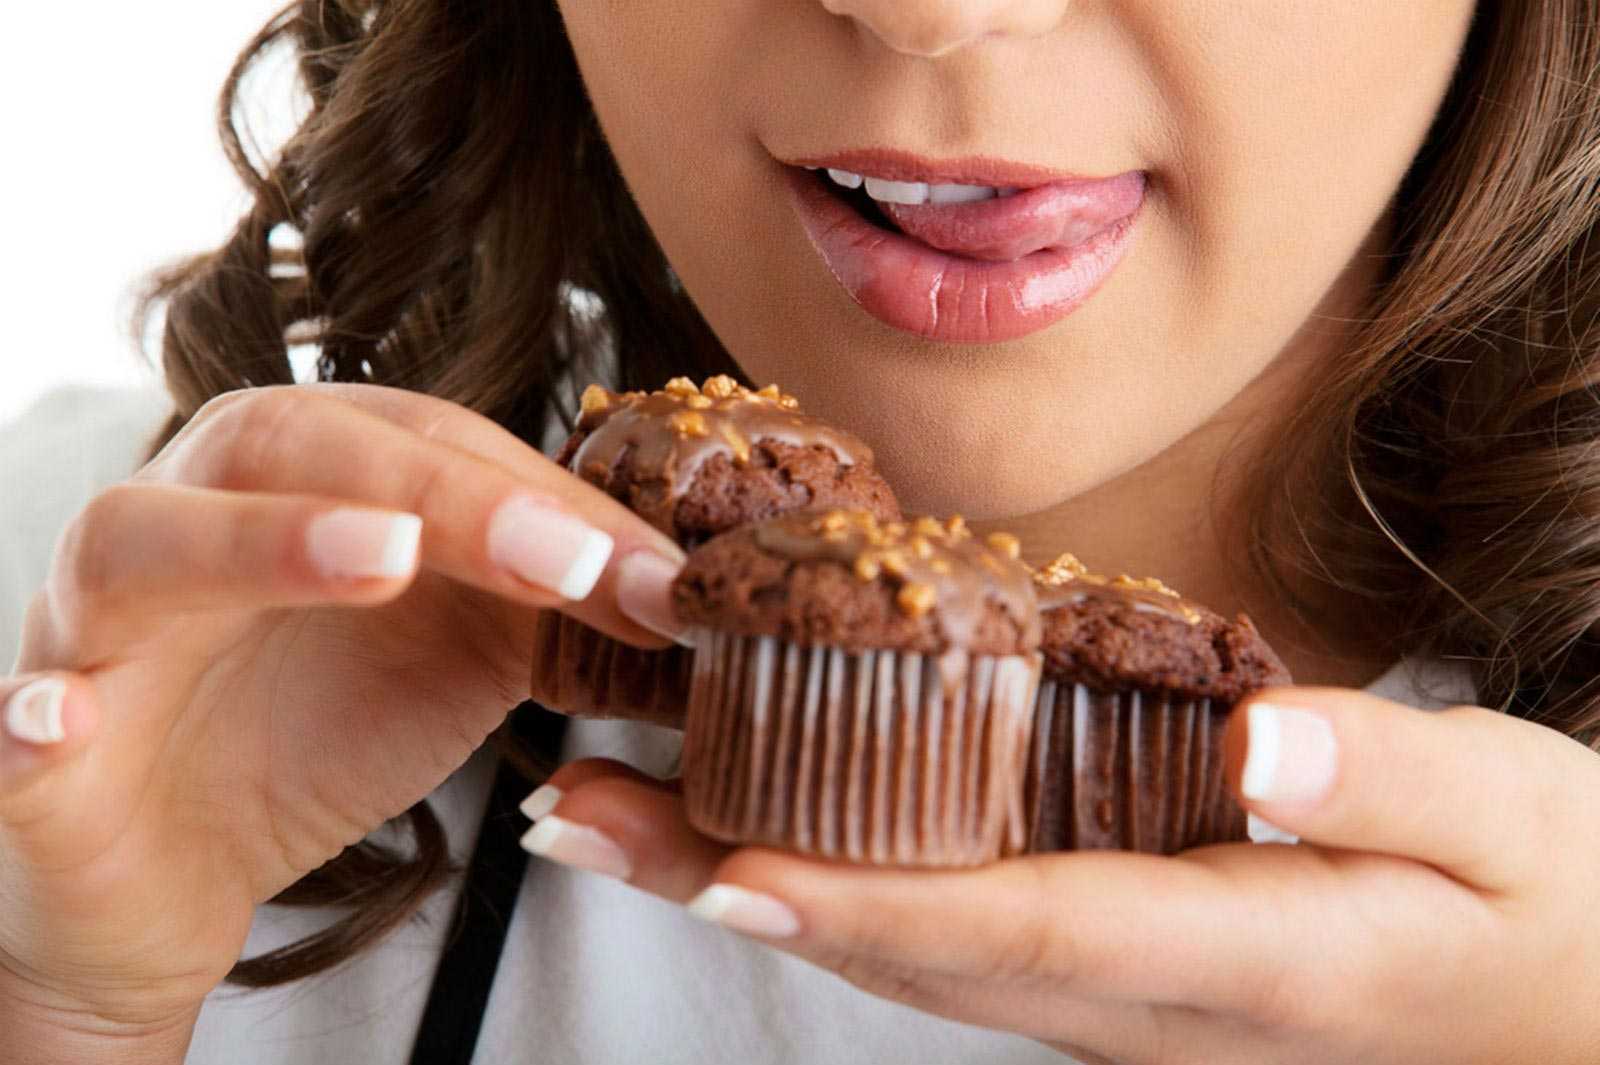 Из-за стресса мы часто тянемся к шоколадке или конфете: почему так происходит и надо ли бороться с желанием съесть сладкое. новости - россия. metro